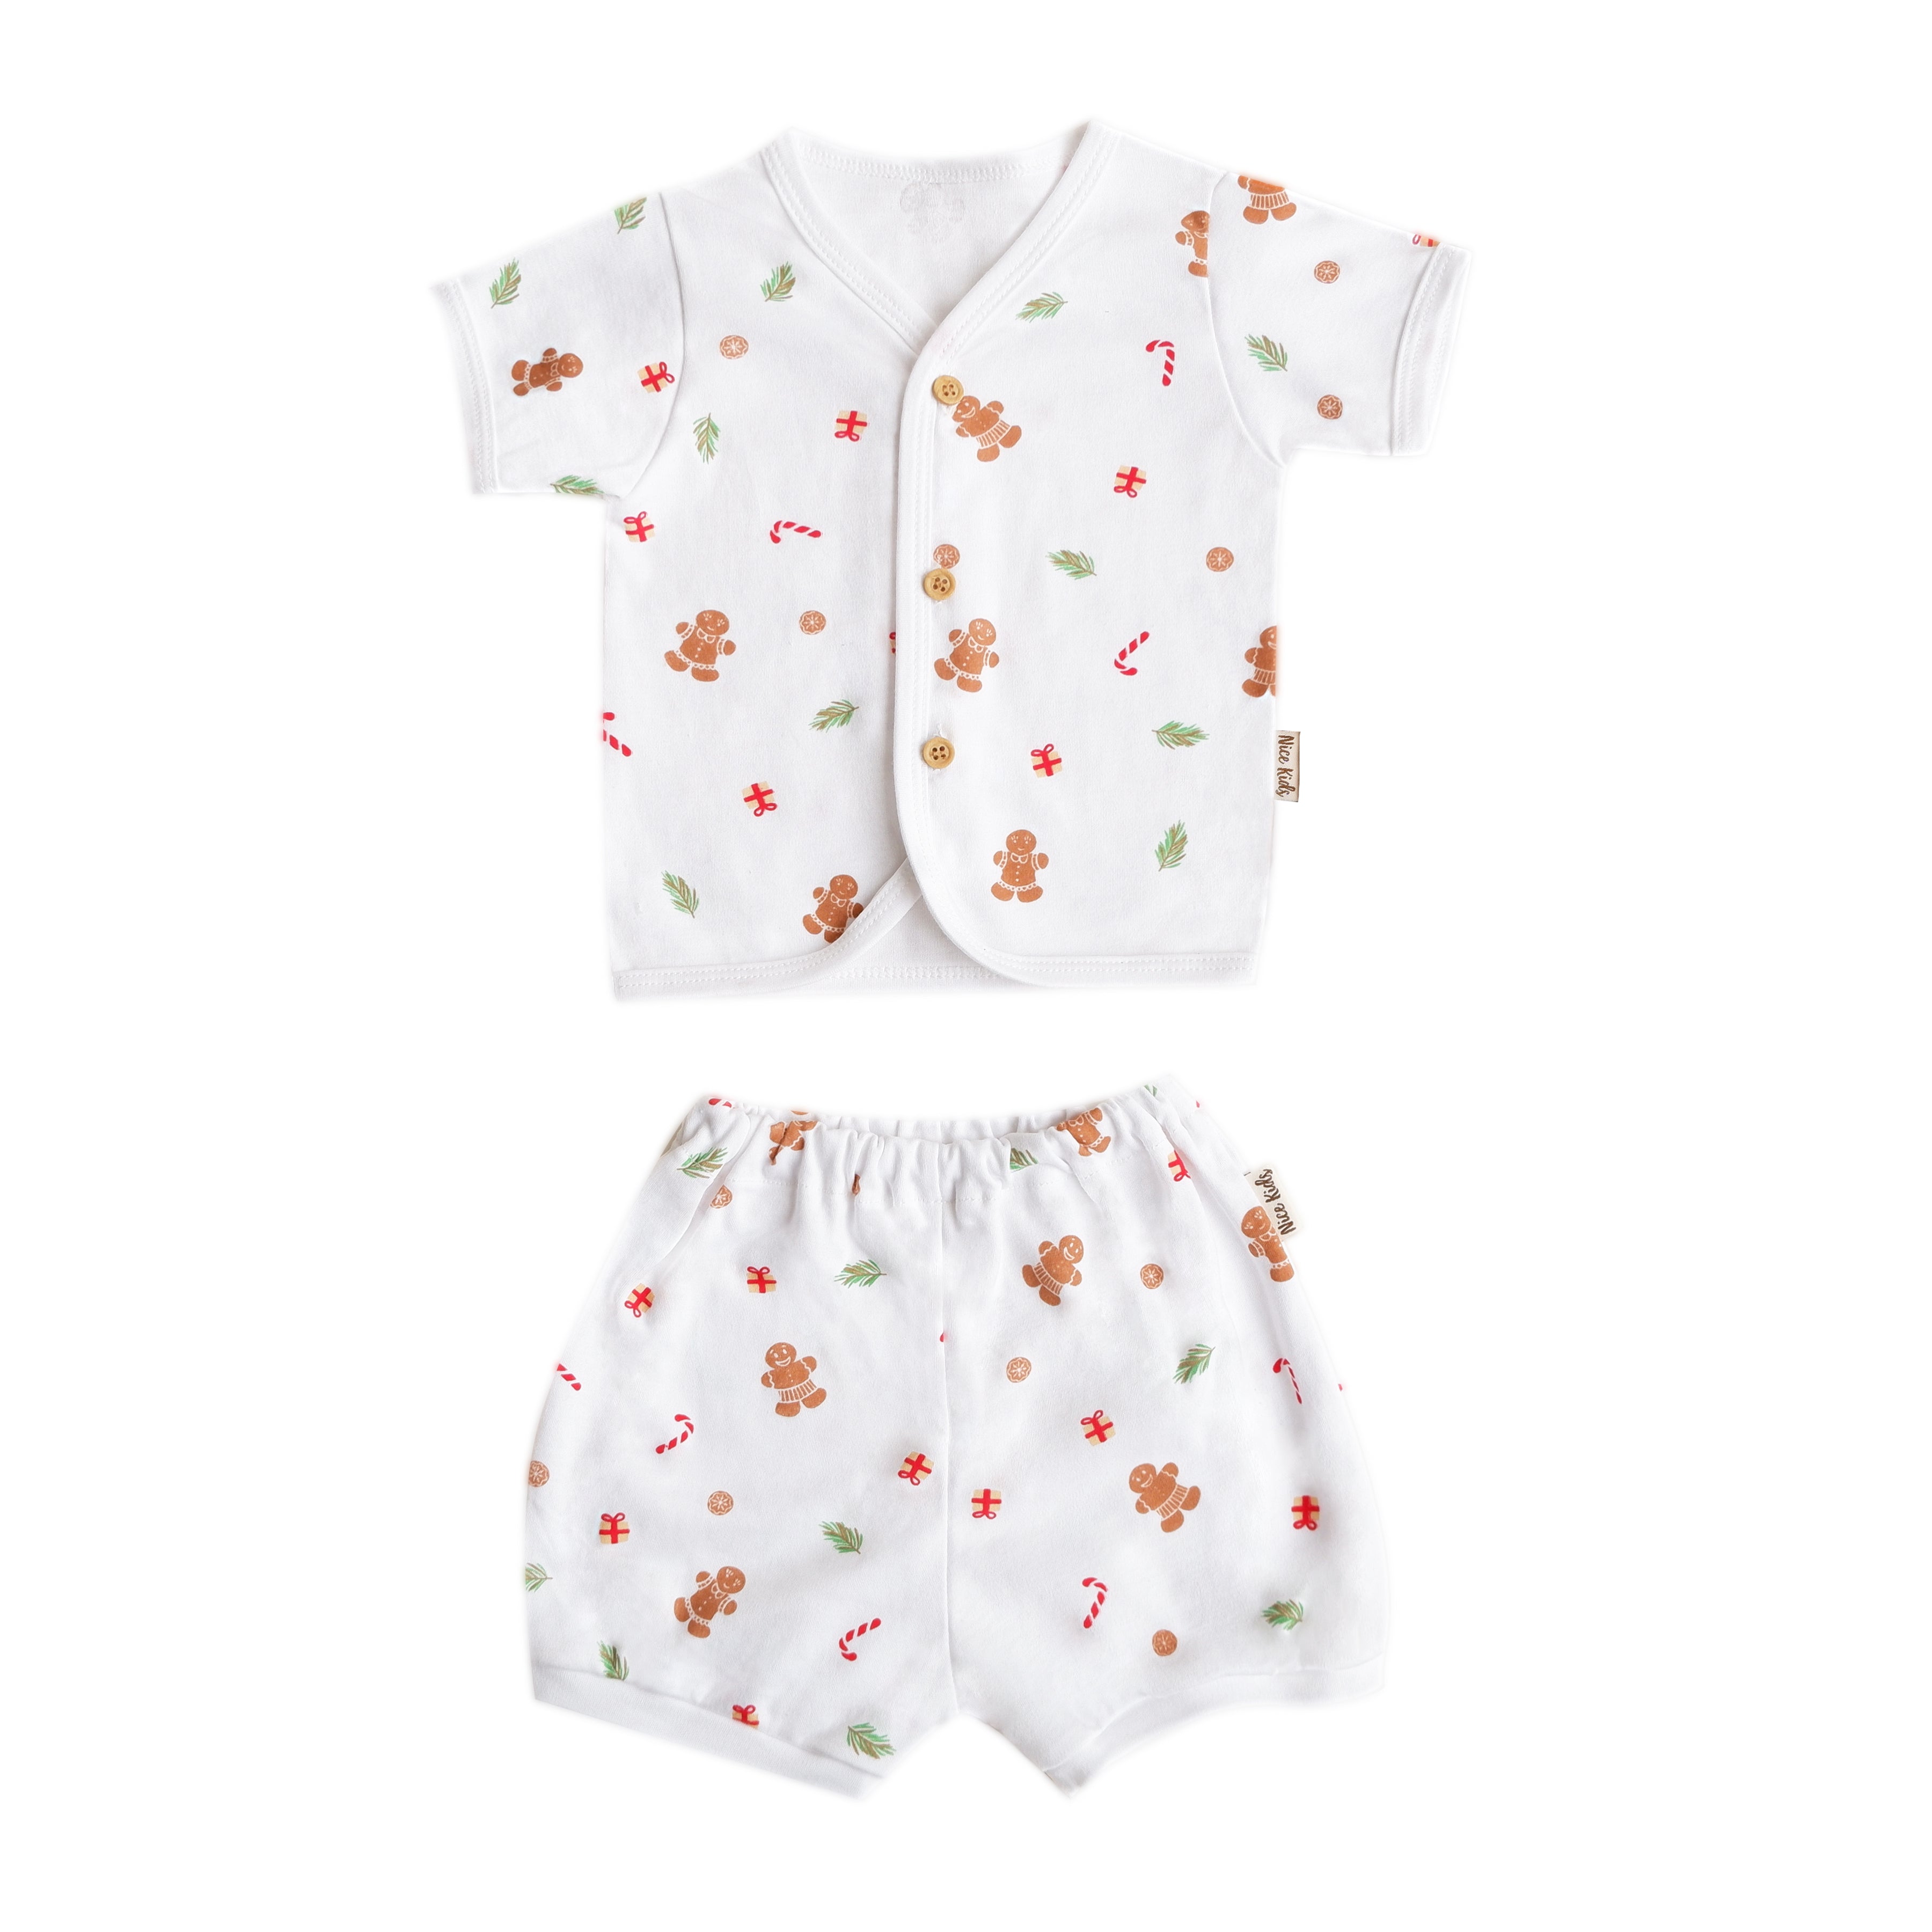 Nice Kids - Winter Short Sleeve Baby Pajamas Set (Piyama Bayi)